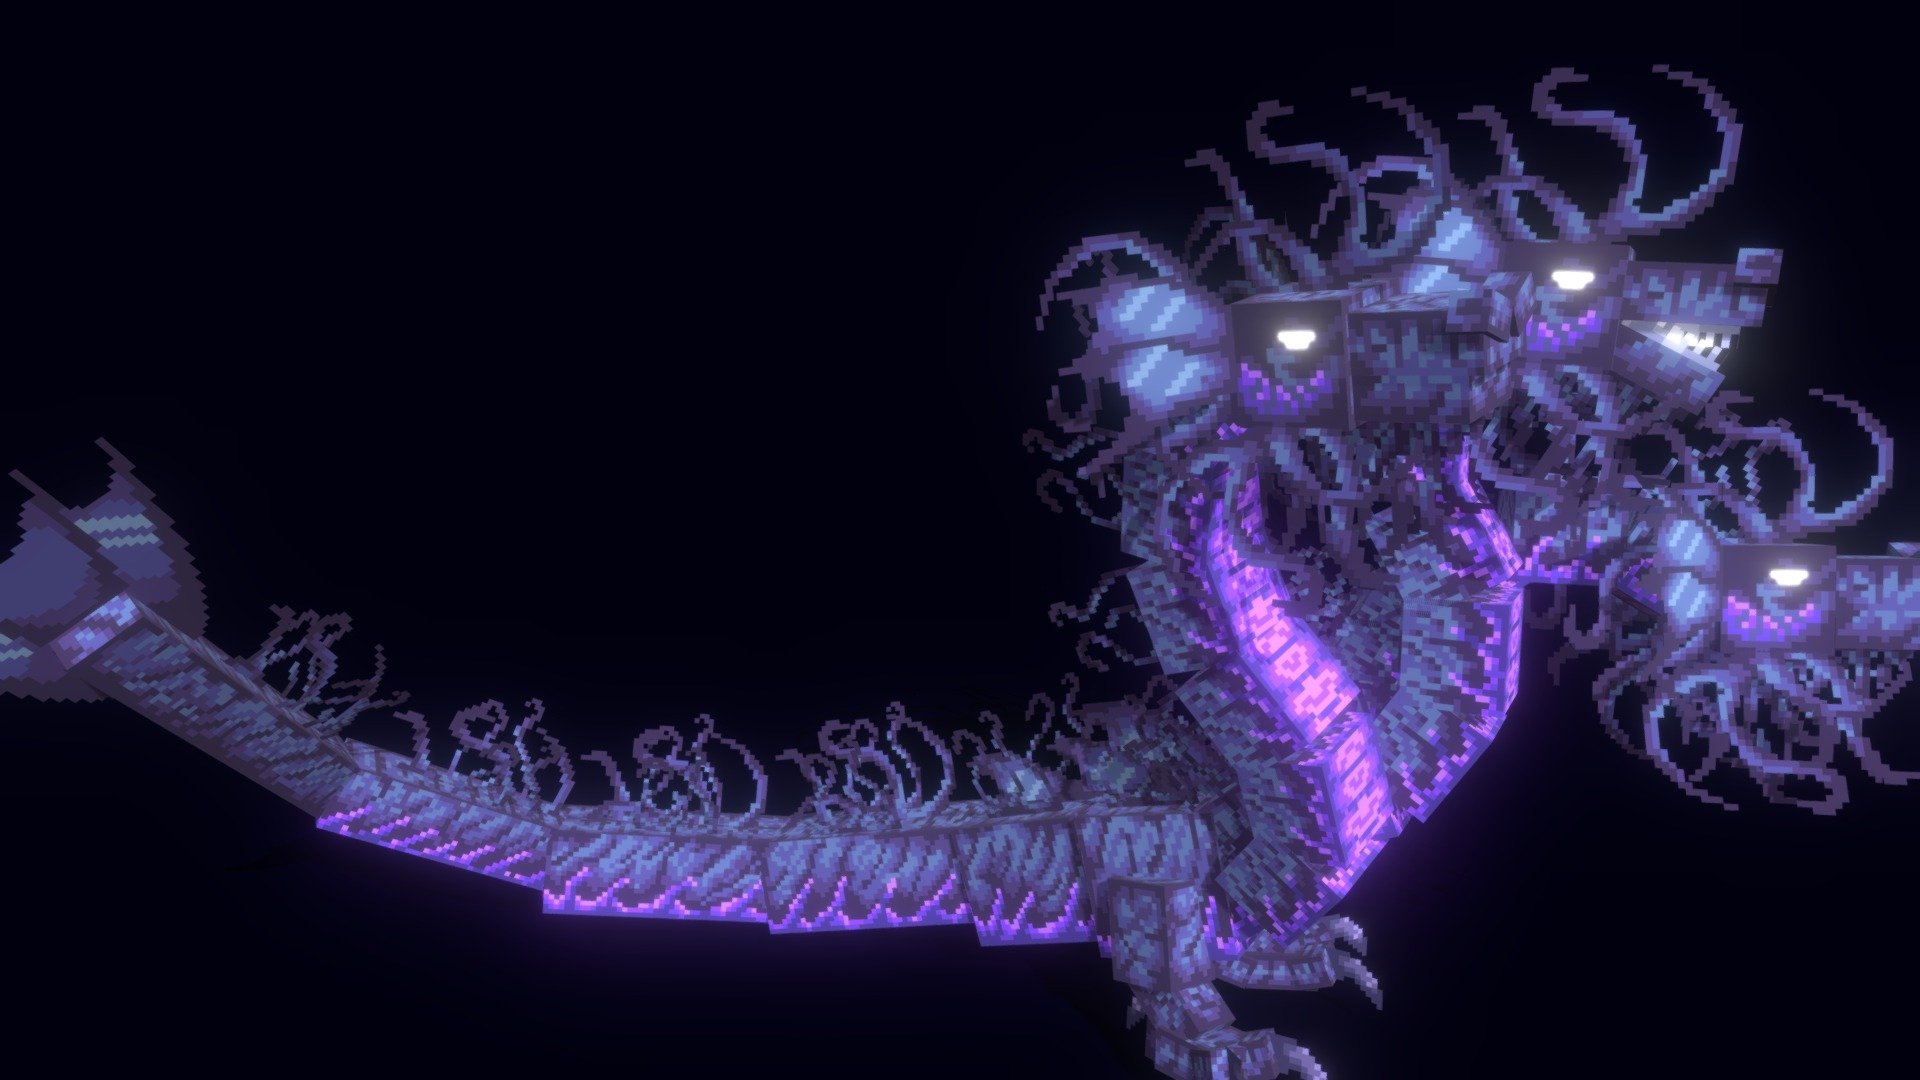 Sintia the Magic Hydra - ModelEngine - 3D model by Kdriiq69 (@Kdriiq) 3d model